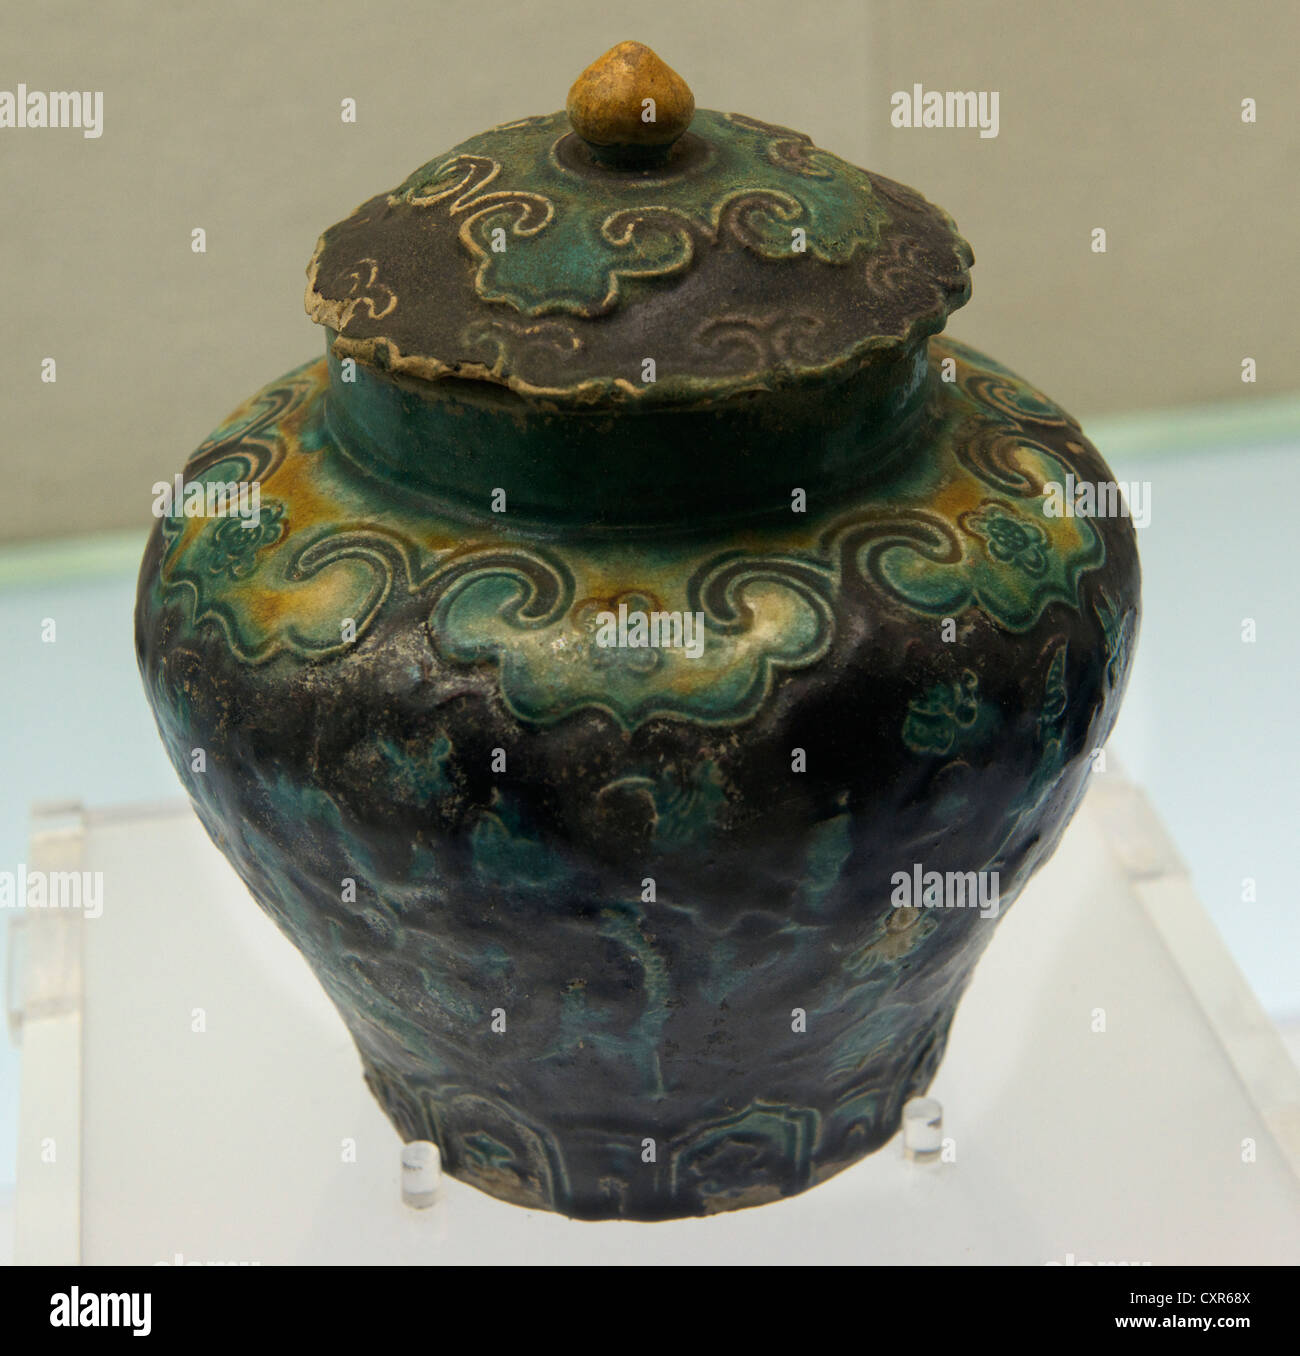 Ceramic Soup Pot Stock Photo - Download Image Now - Ceramics, Cooking Pan,  Porcelain - iStock